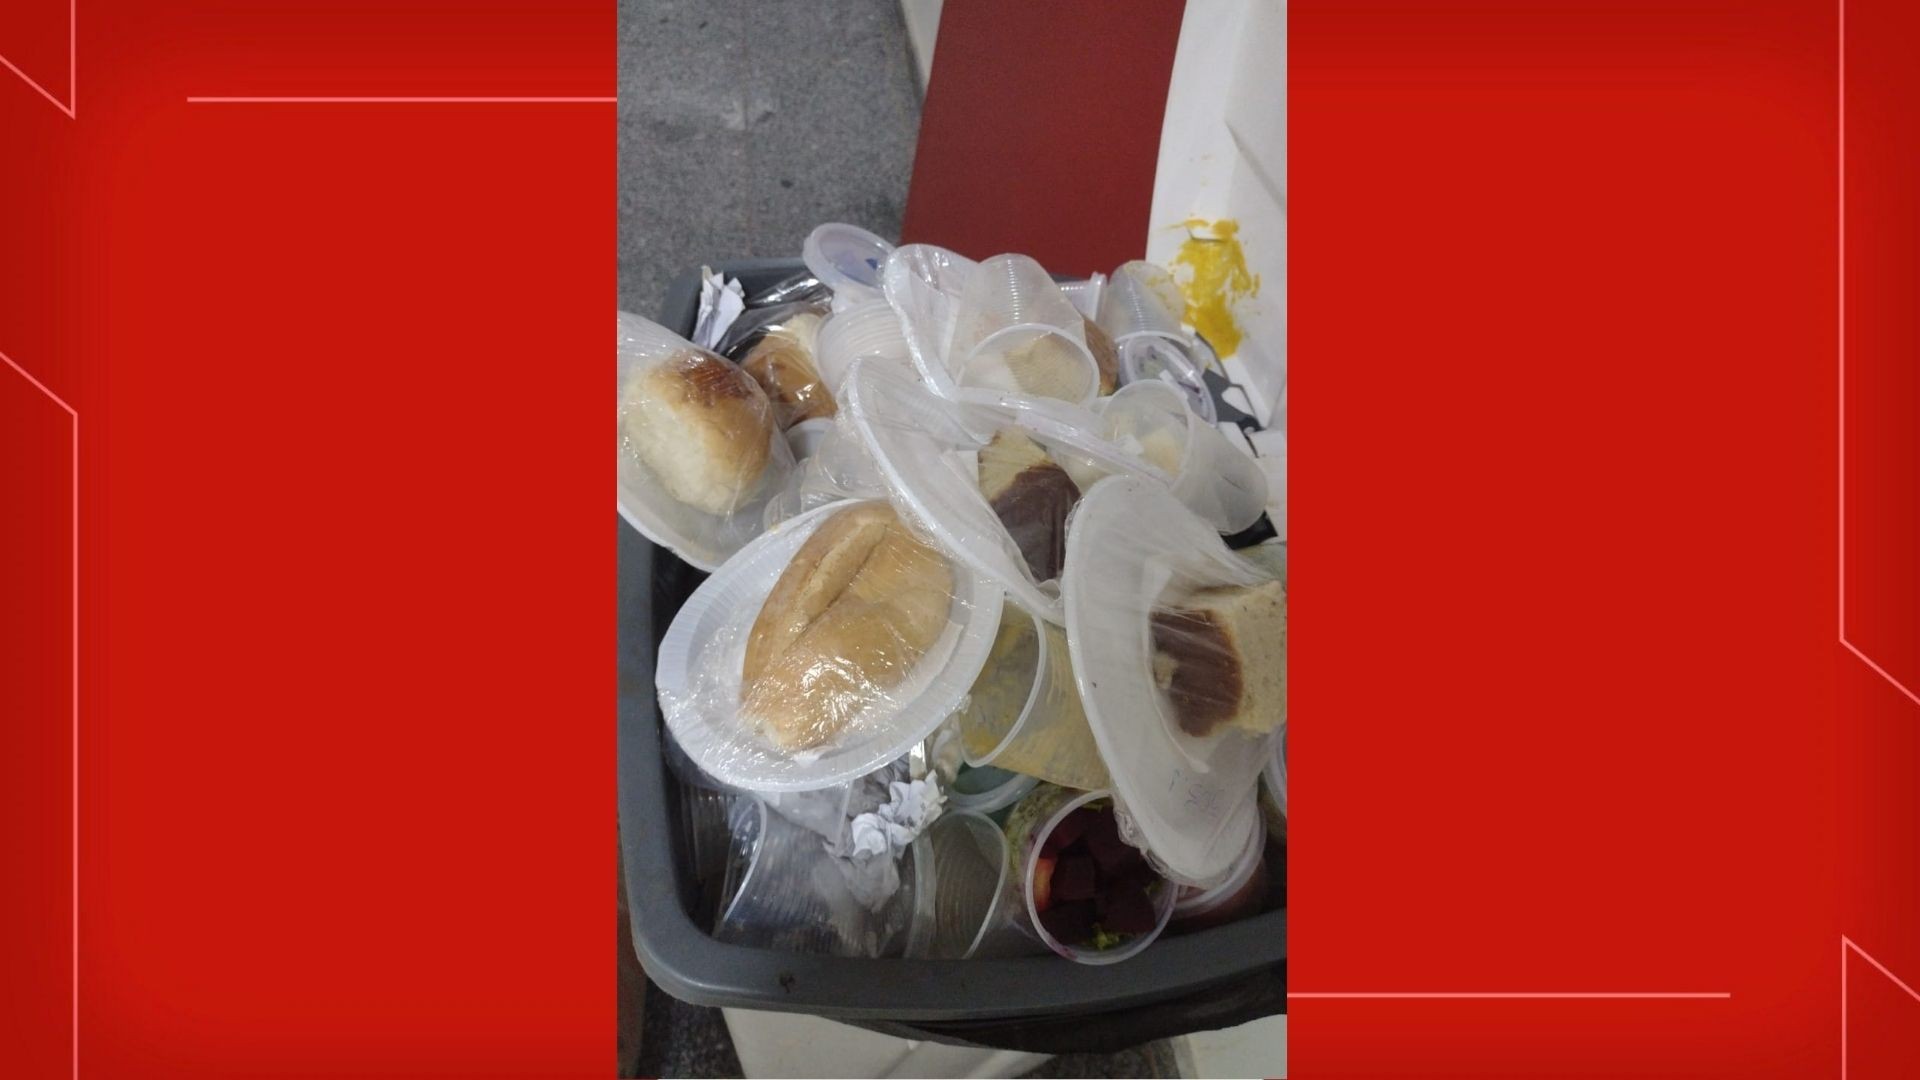 FOTOS: Comida embalada e pronta para consumo é jogada no lixo no Hospital de Base, no DF 